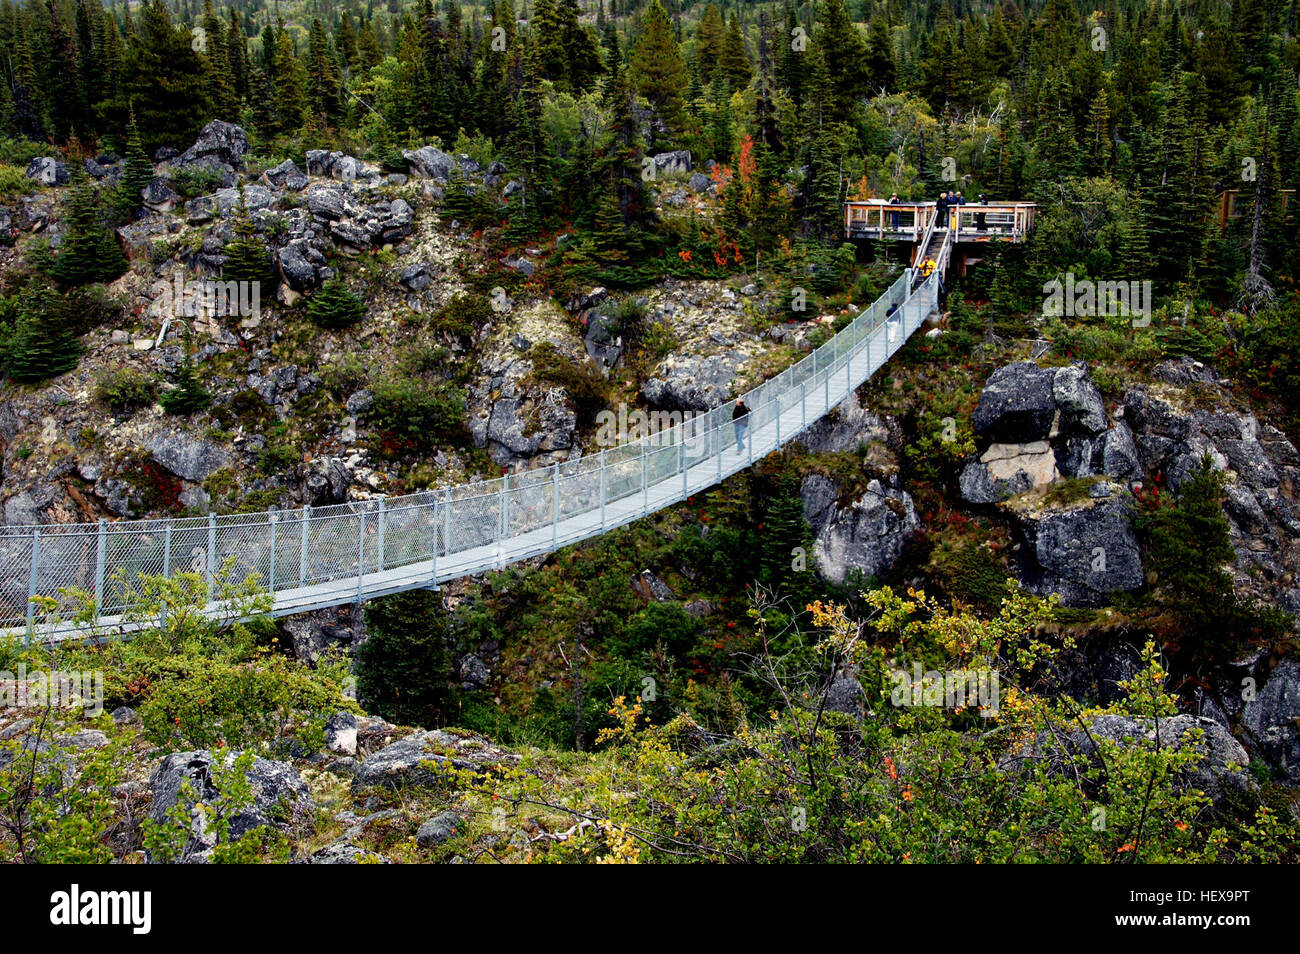 La sospensione di Yukon Bridge è un pedone cavo ponte di sospensione si trova sul miglio 46.5 sul Sud Klondike Highway in Northern British Columbia, Canada. Si tratta di 200 piedi (60,96 metri) lungo e si allunga 57 ft (17.36 metri) oltre il Tutshi River Canyon. Vi è una tassa di ammissione ed è visitato da oltre 25 000 persone ogni estate tra i mesi di maggio e settembre. Foto Stock